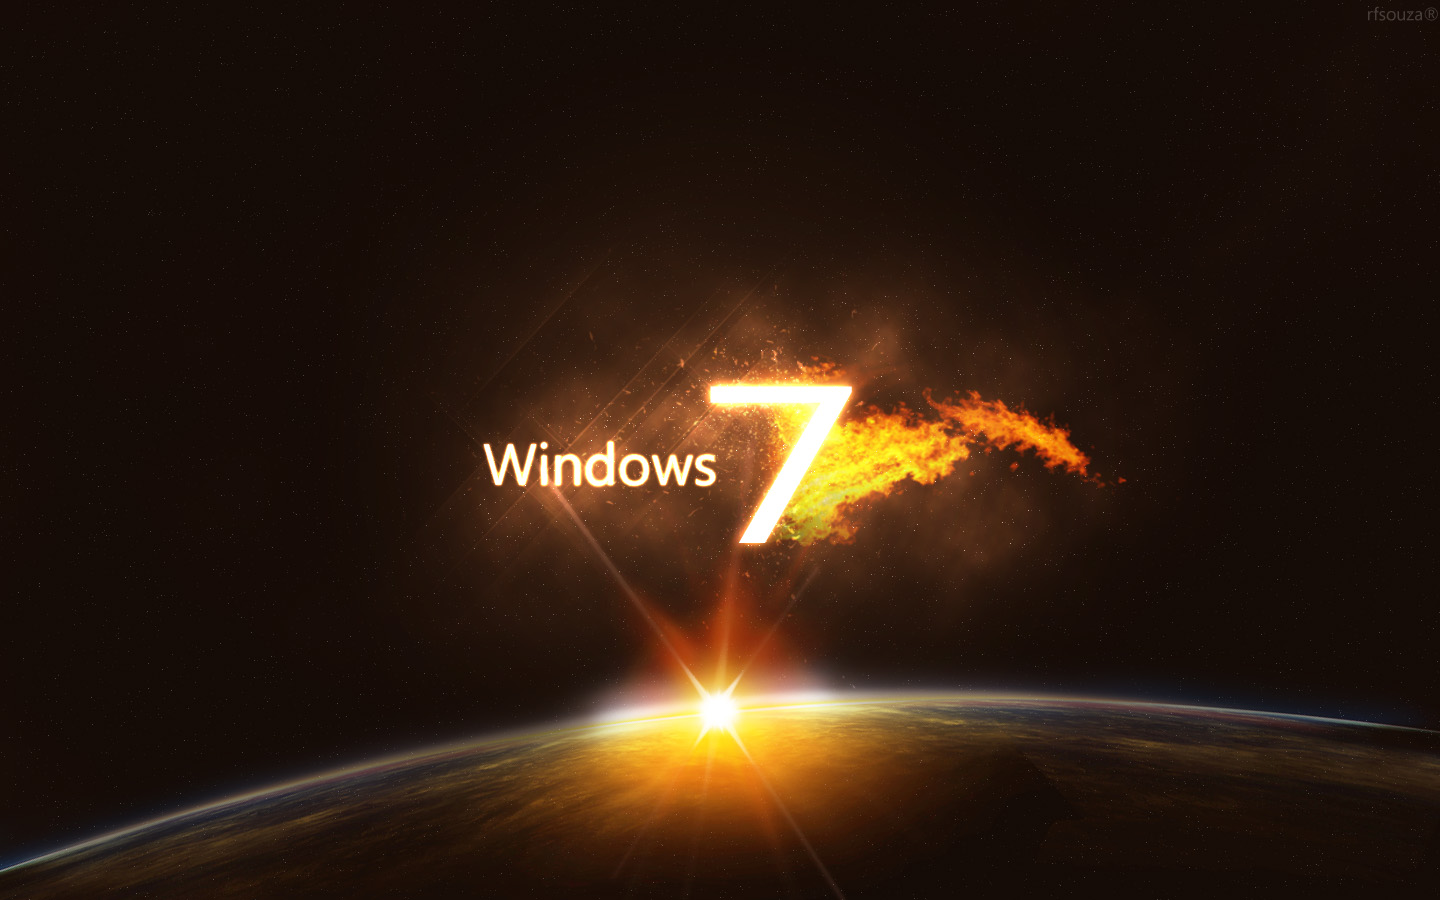 Fond d'ecran Windows 7 Fire